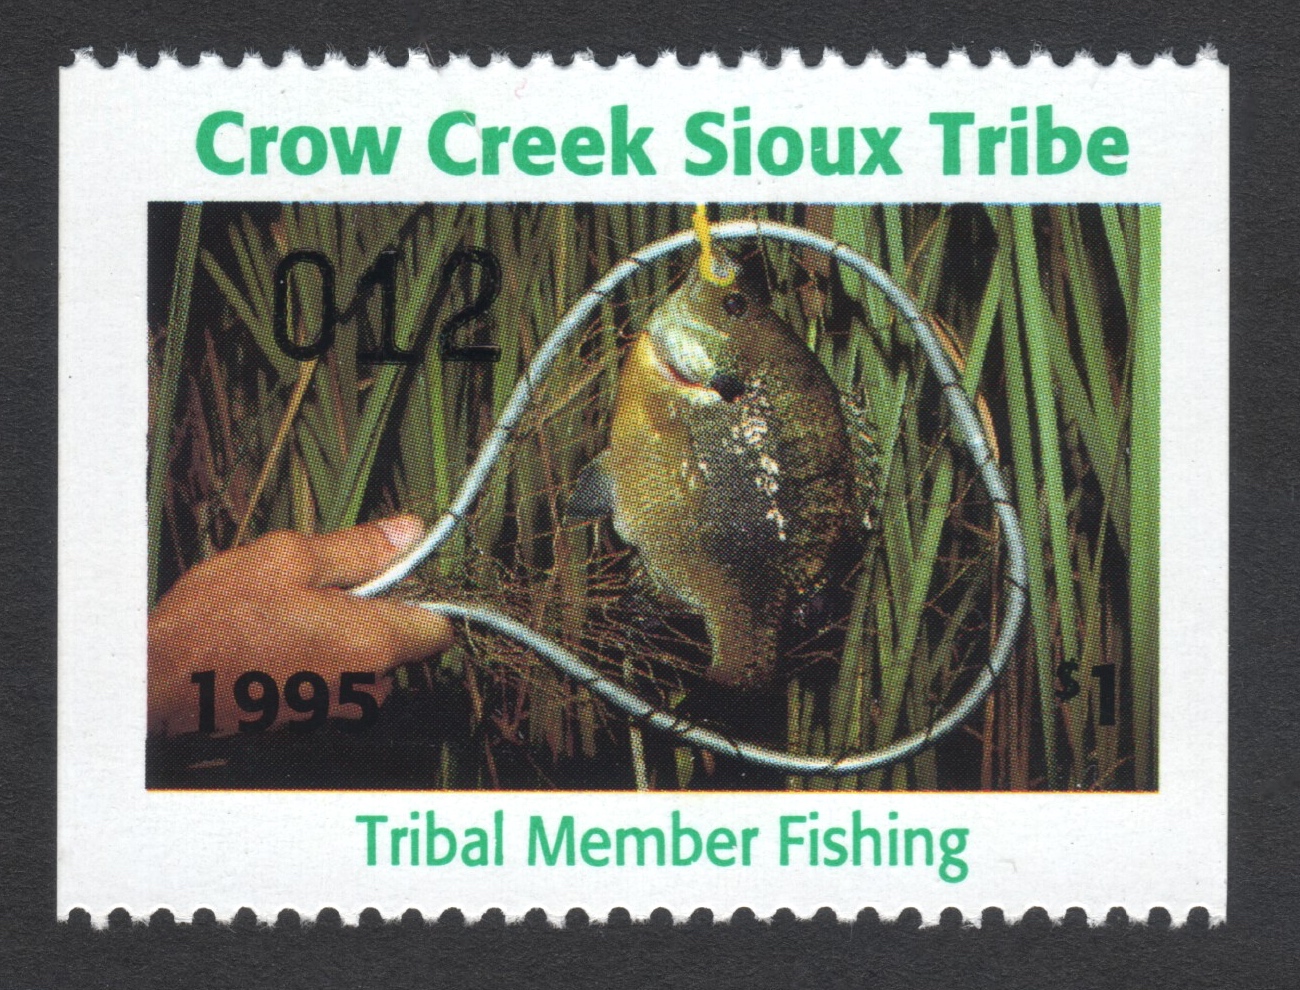 1995 Crow Creek Tribal Member Fishing